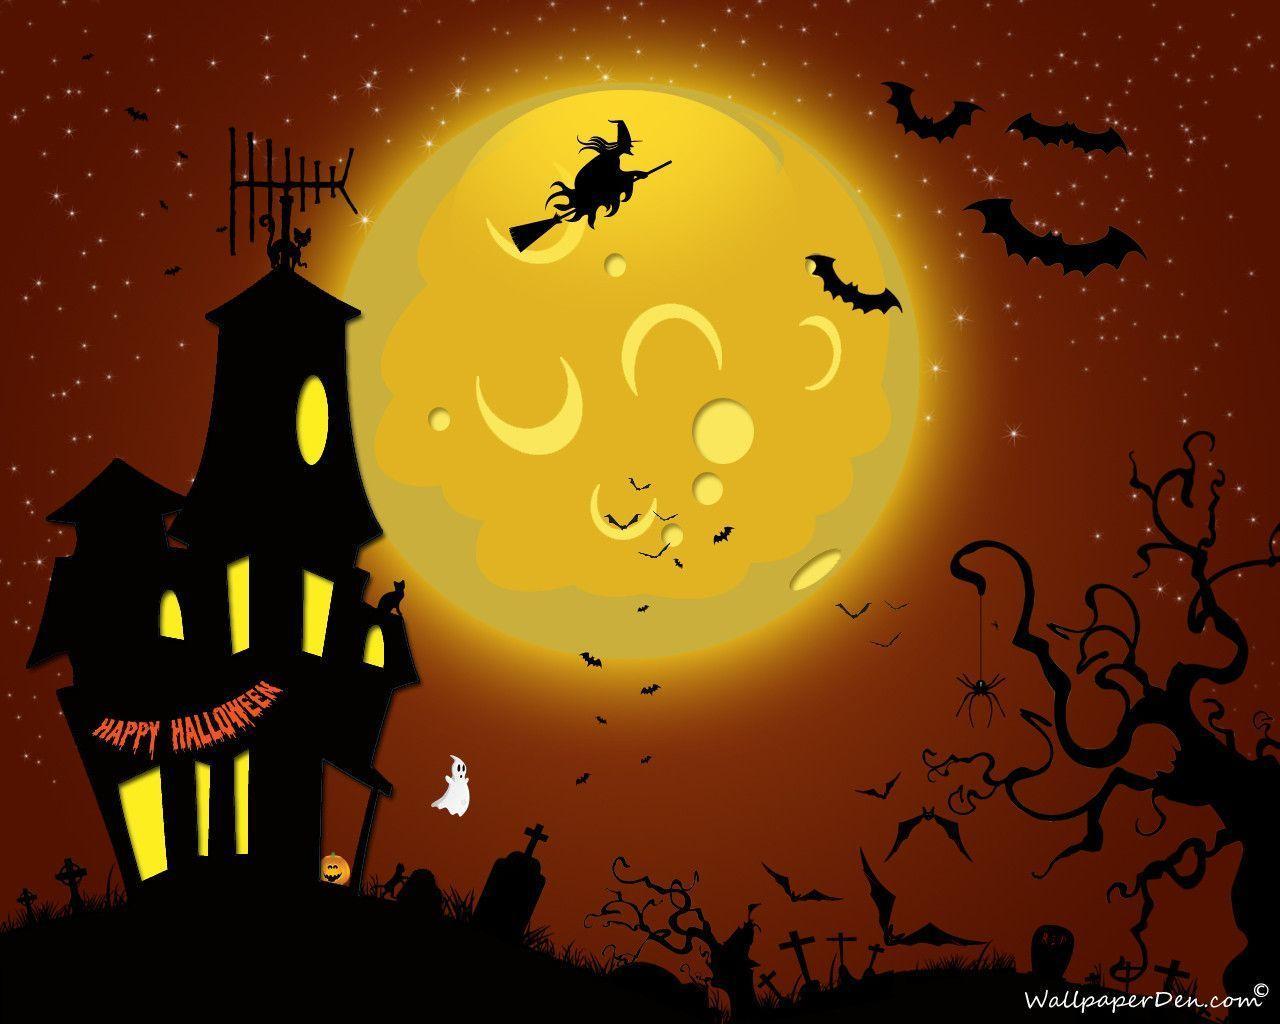 Download Happy Halloween Picture Wallpaper 1280x1024. HD